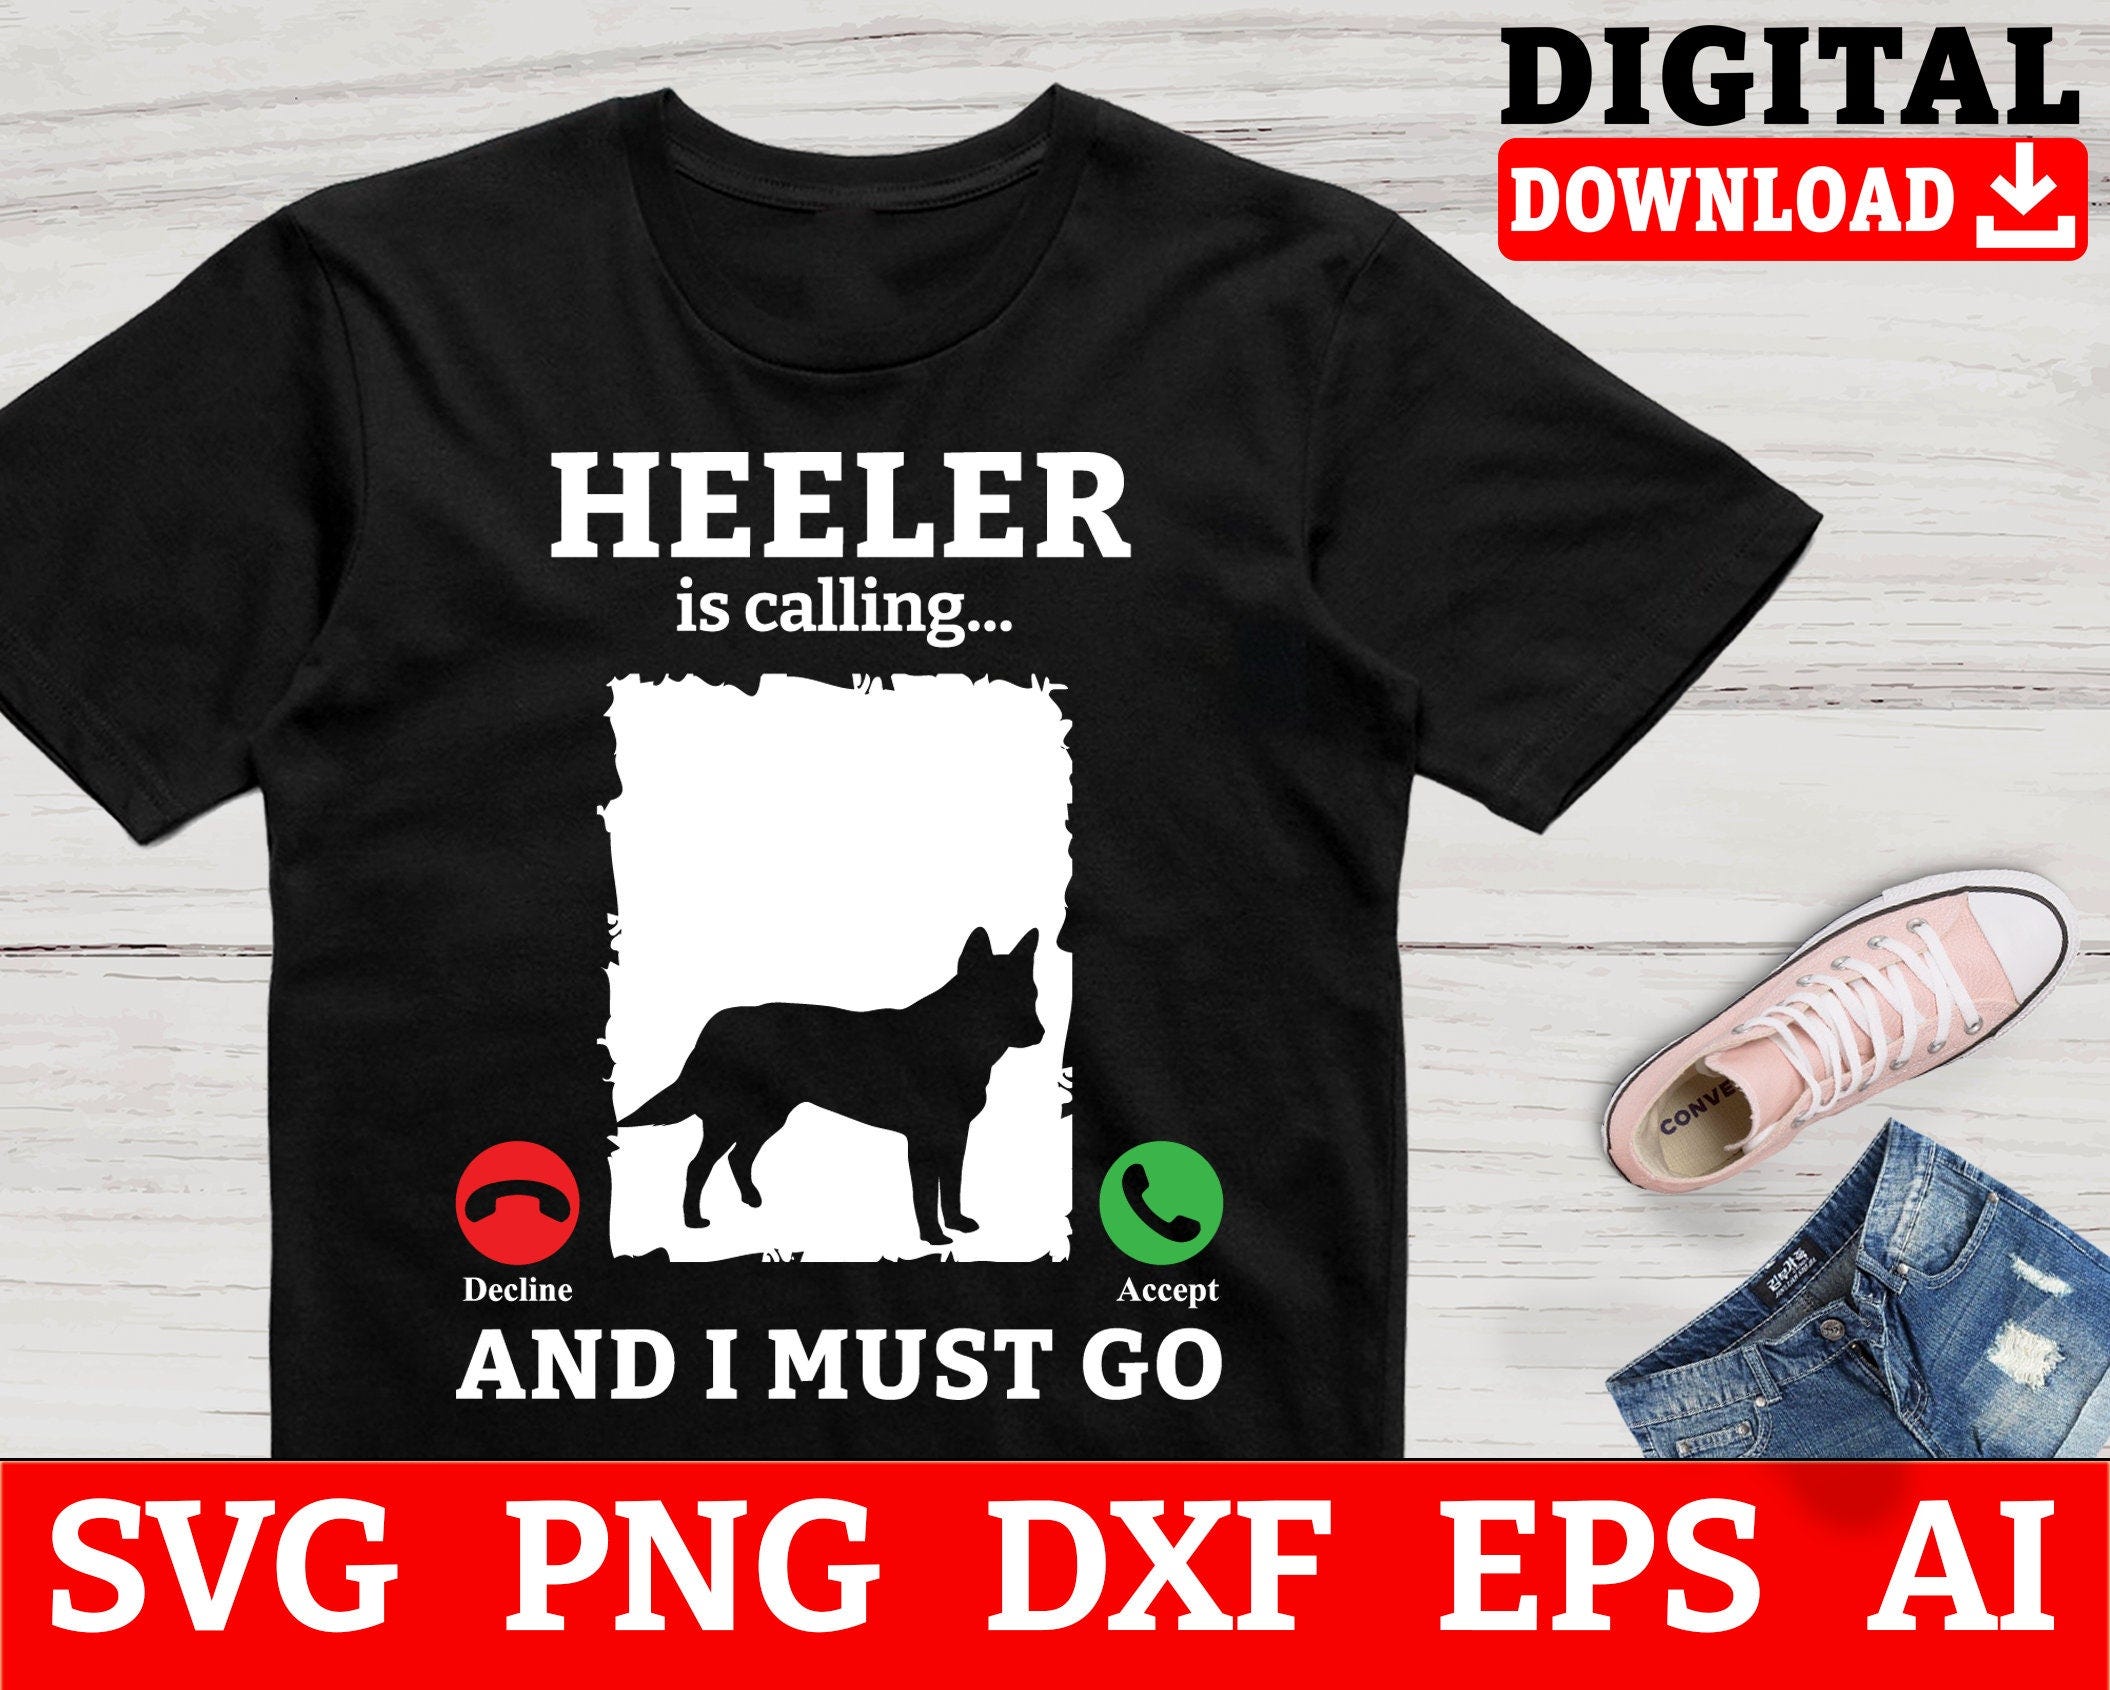 Heeler Dog Svg Files - Heeler Is Calling And I Must Go Heeler Svg, Australian Cattle Dog Svg, Svg Files For Cricut, Instant Download